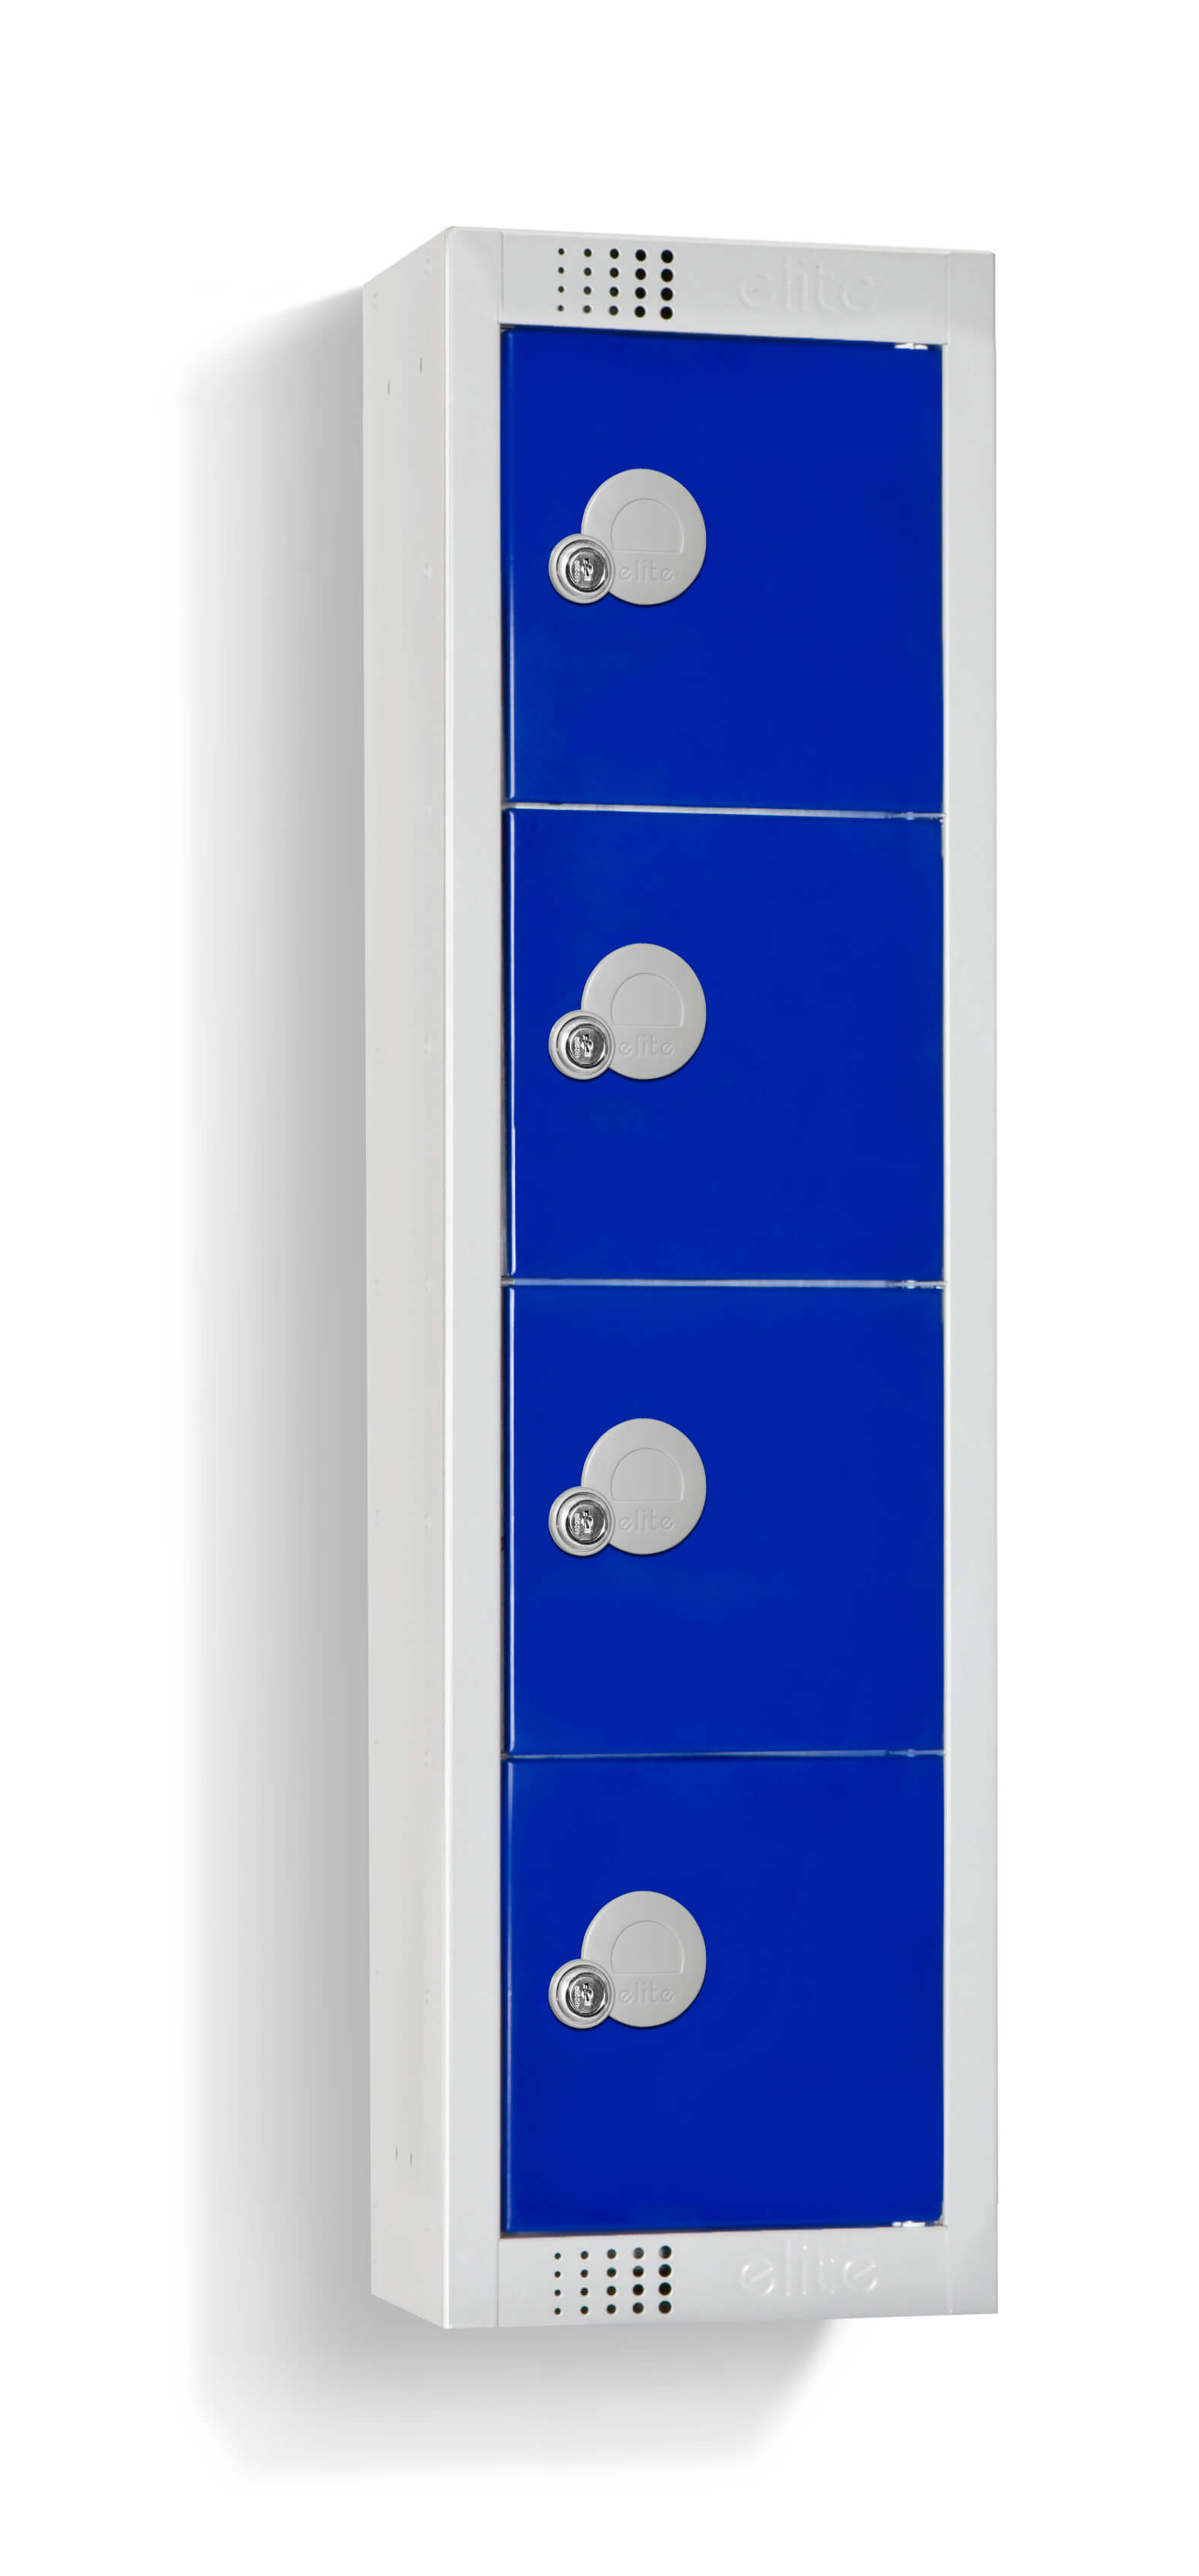 Elite Wall Mounted Personal Effects Locker - 4 Door Blue